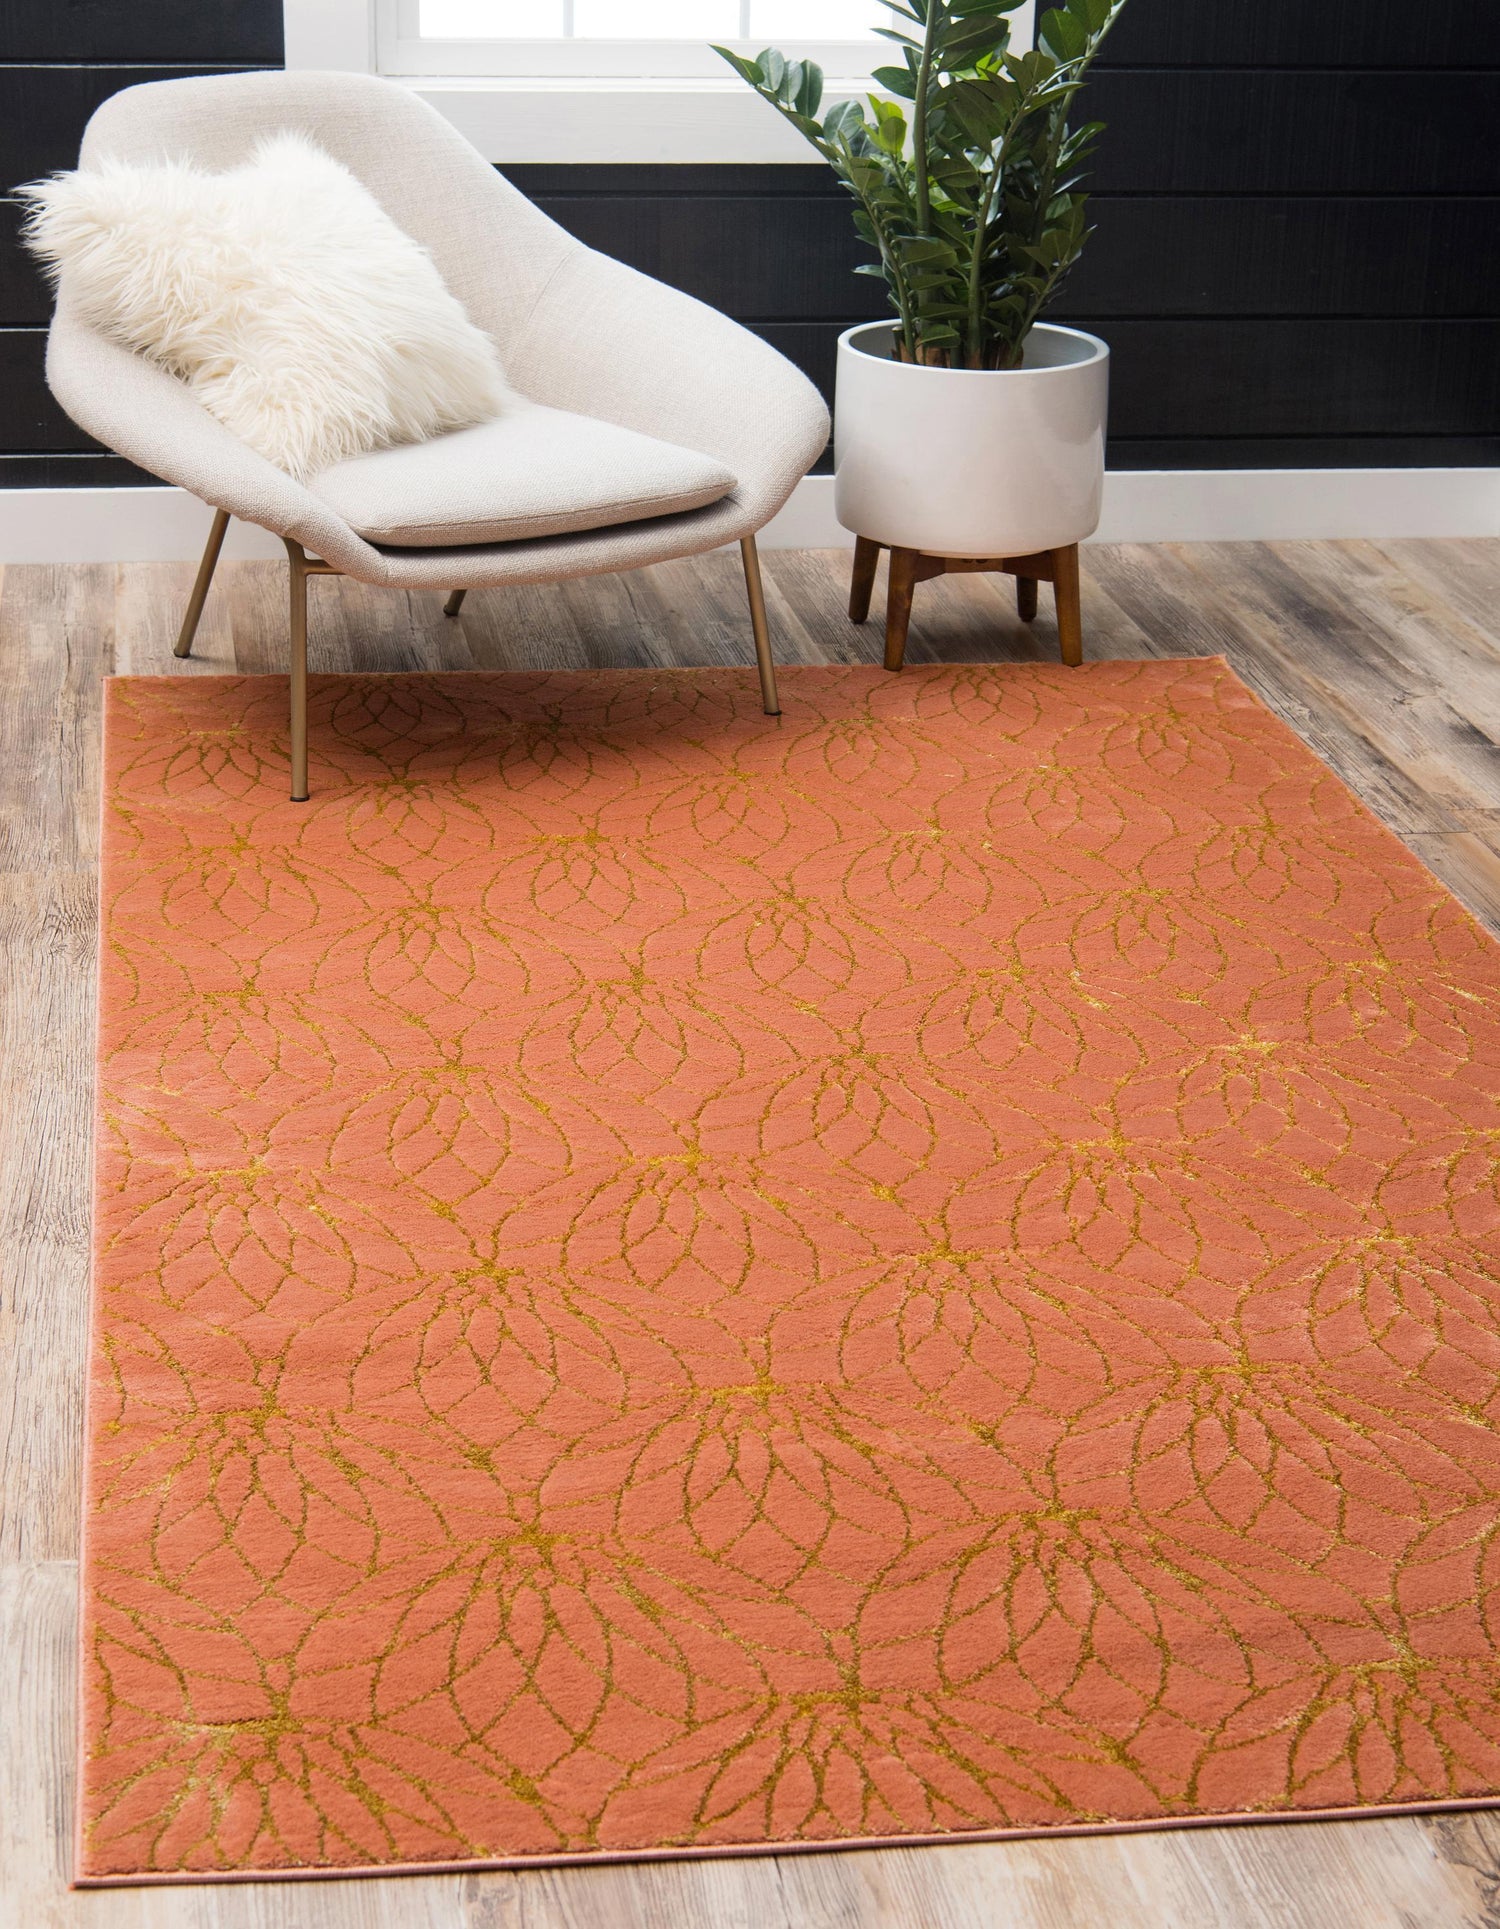 Ellison - Lotus Flower Pattern Luxury Rug - Nordic Side - abstract-rug, Area-rug, feed-cl0-over-80-dollars, geometric-rug, hallway-runner, large-rug, luxury-rug, modern, modern-rug, round-rug